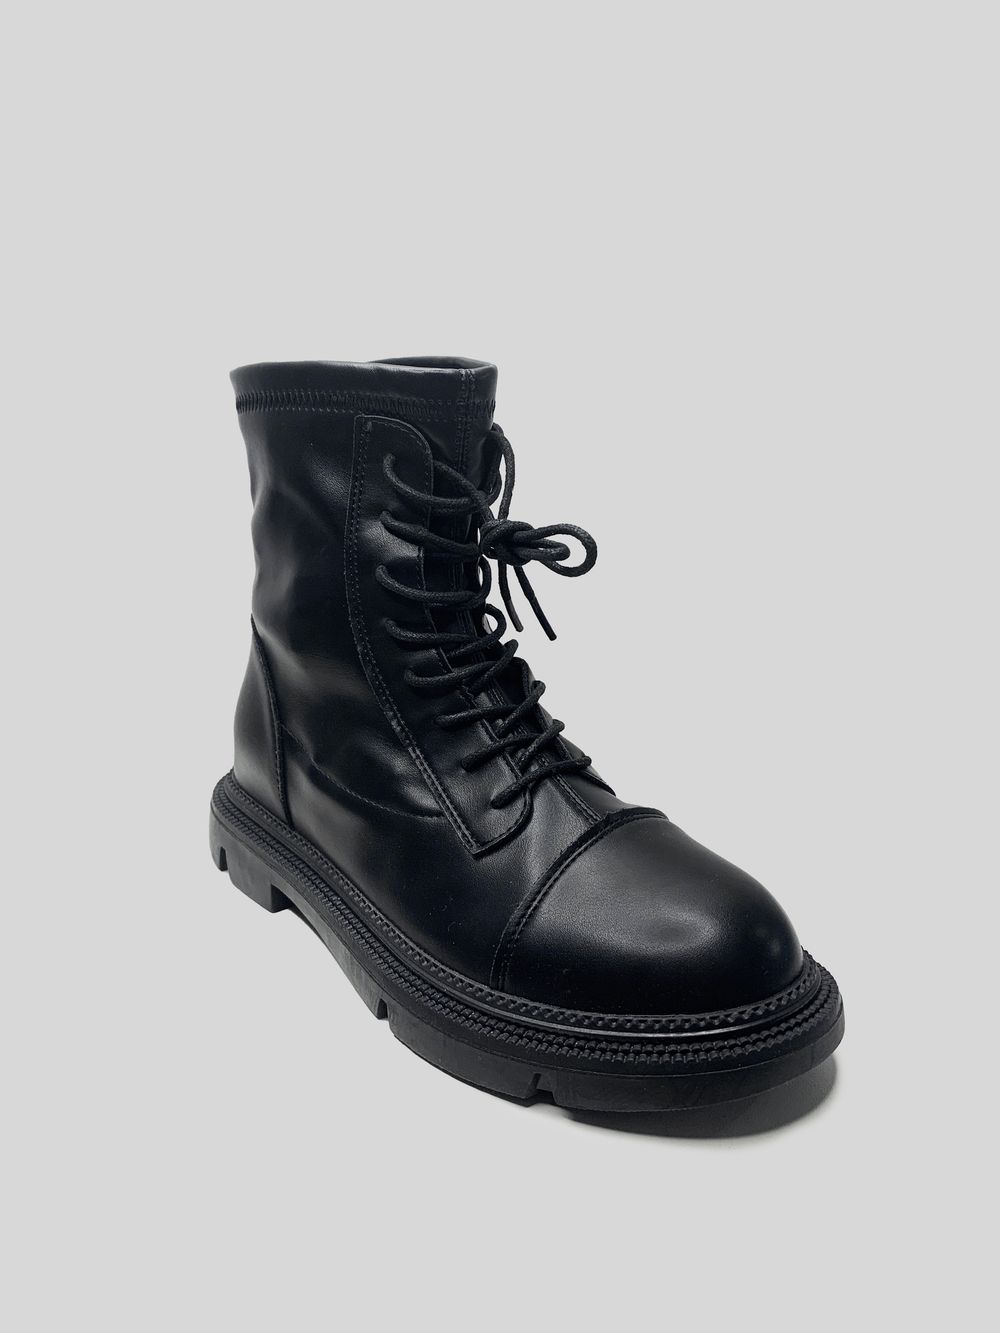 Ботинки со шнуровкой и молнией сзади Dino Albat 2172-1 из кожи с утеплителем\Черный недорого